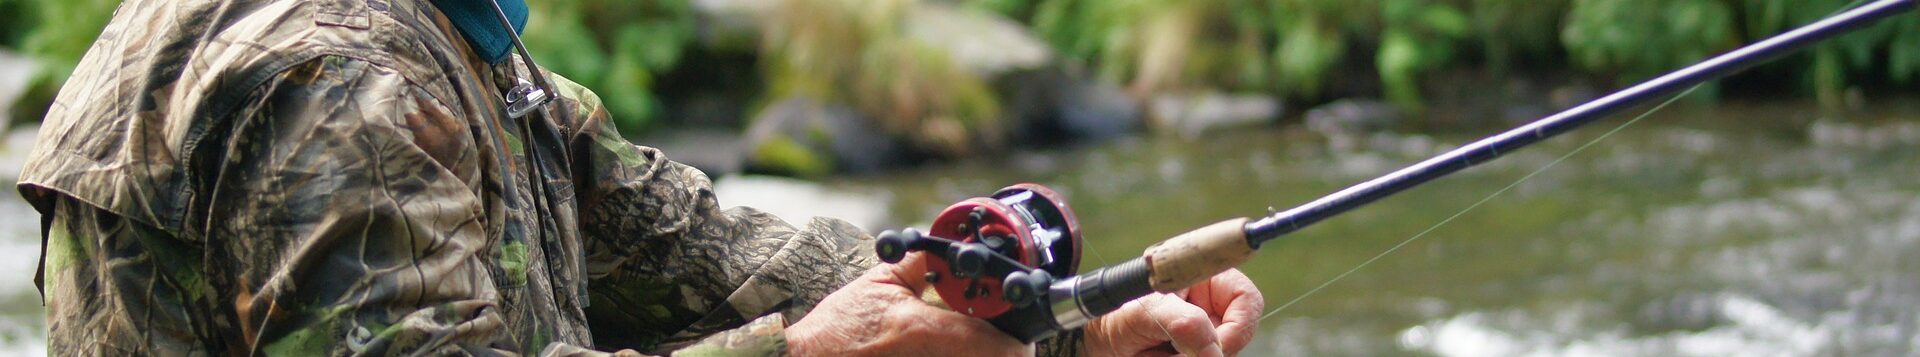 Angler an Fluss